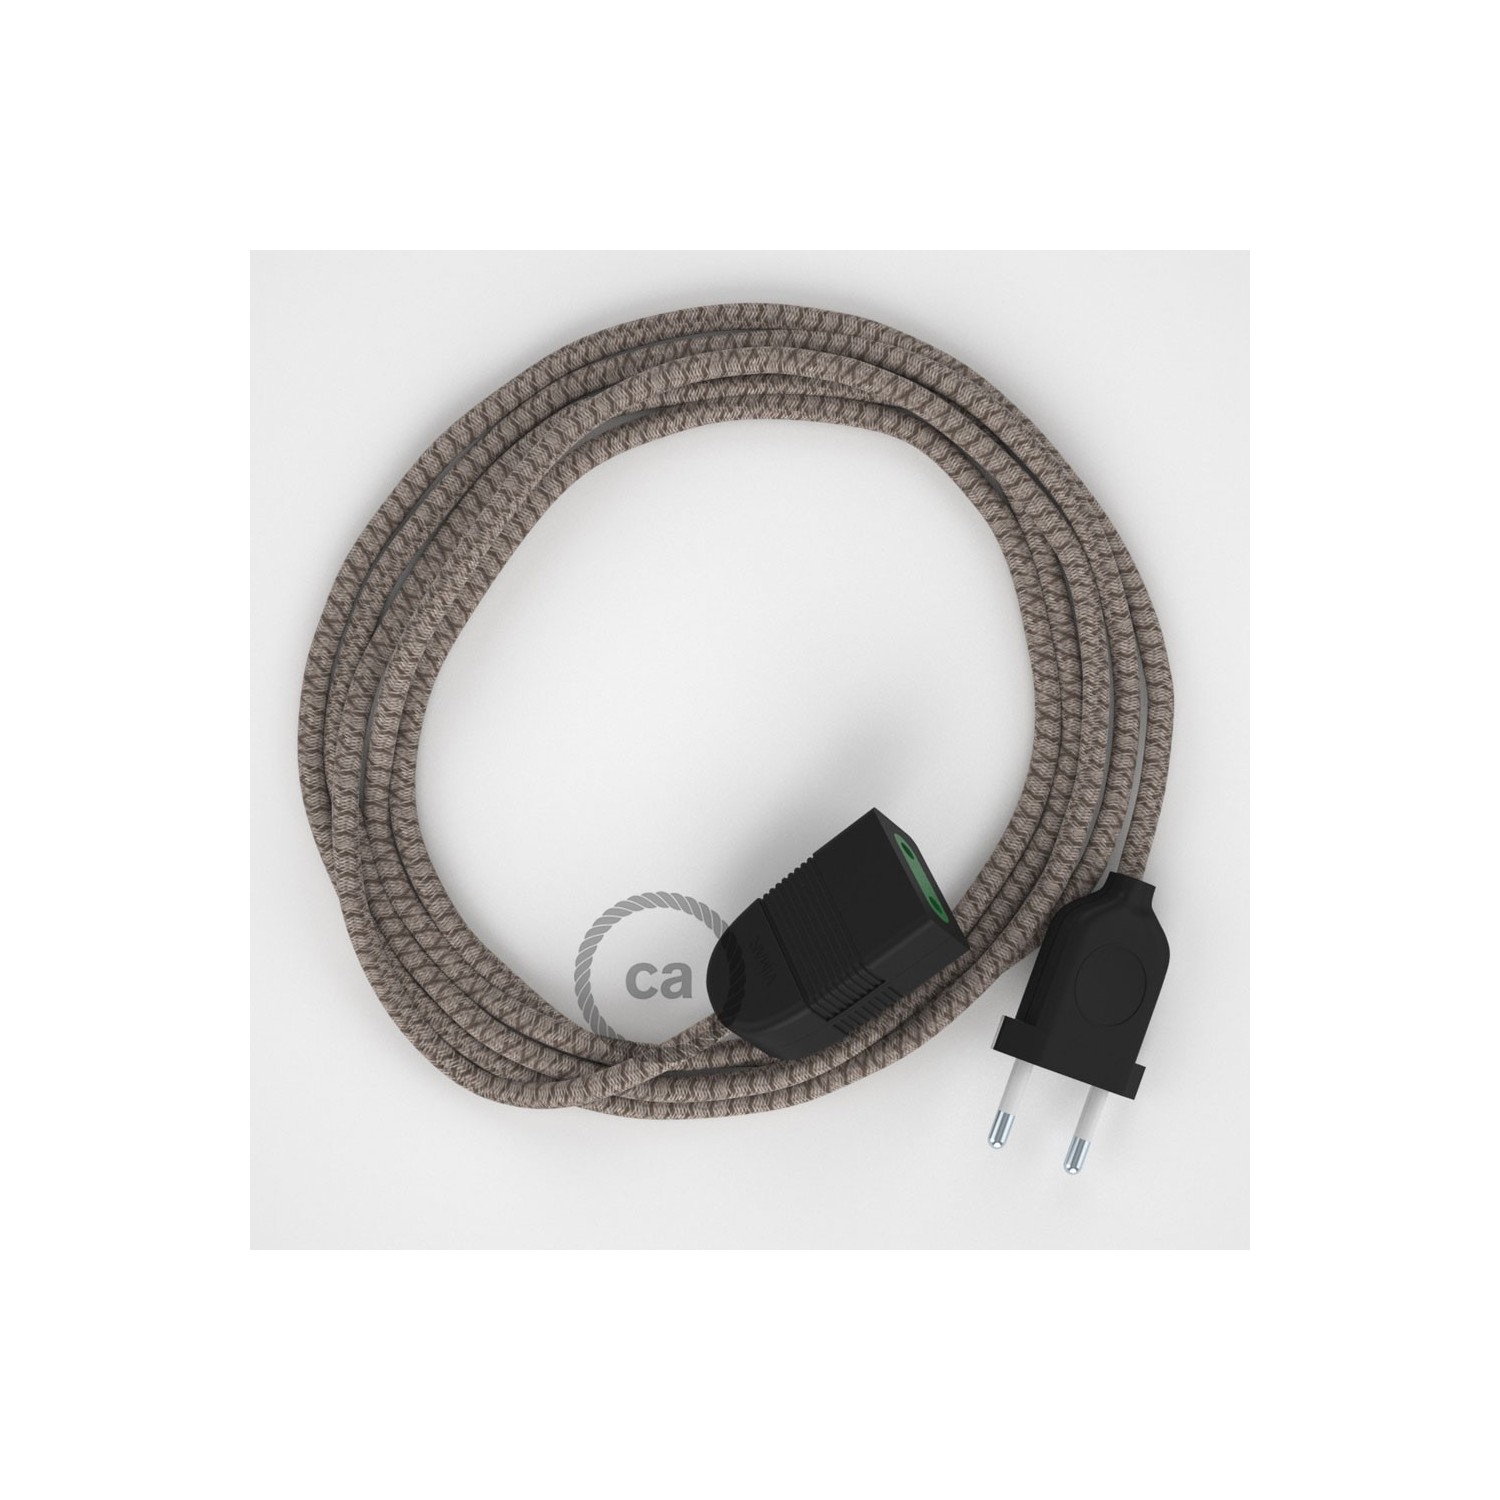 Rallonge électrique avec câble textile RD63 Coton et Lin Naturel Losange Marron Écorce 2P 10A Made in Italy.